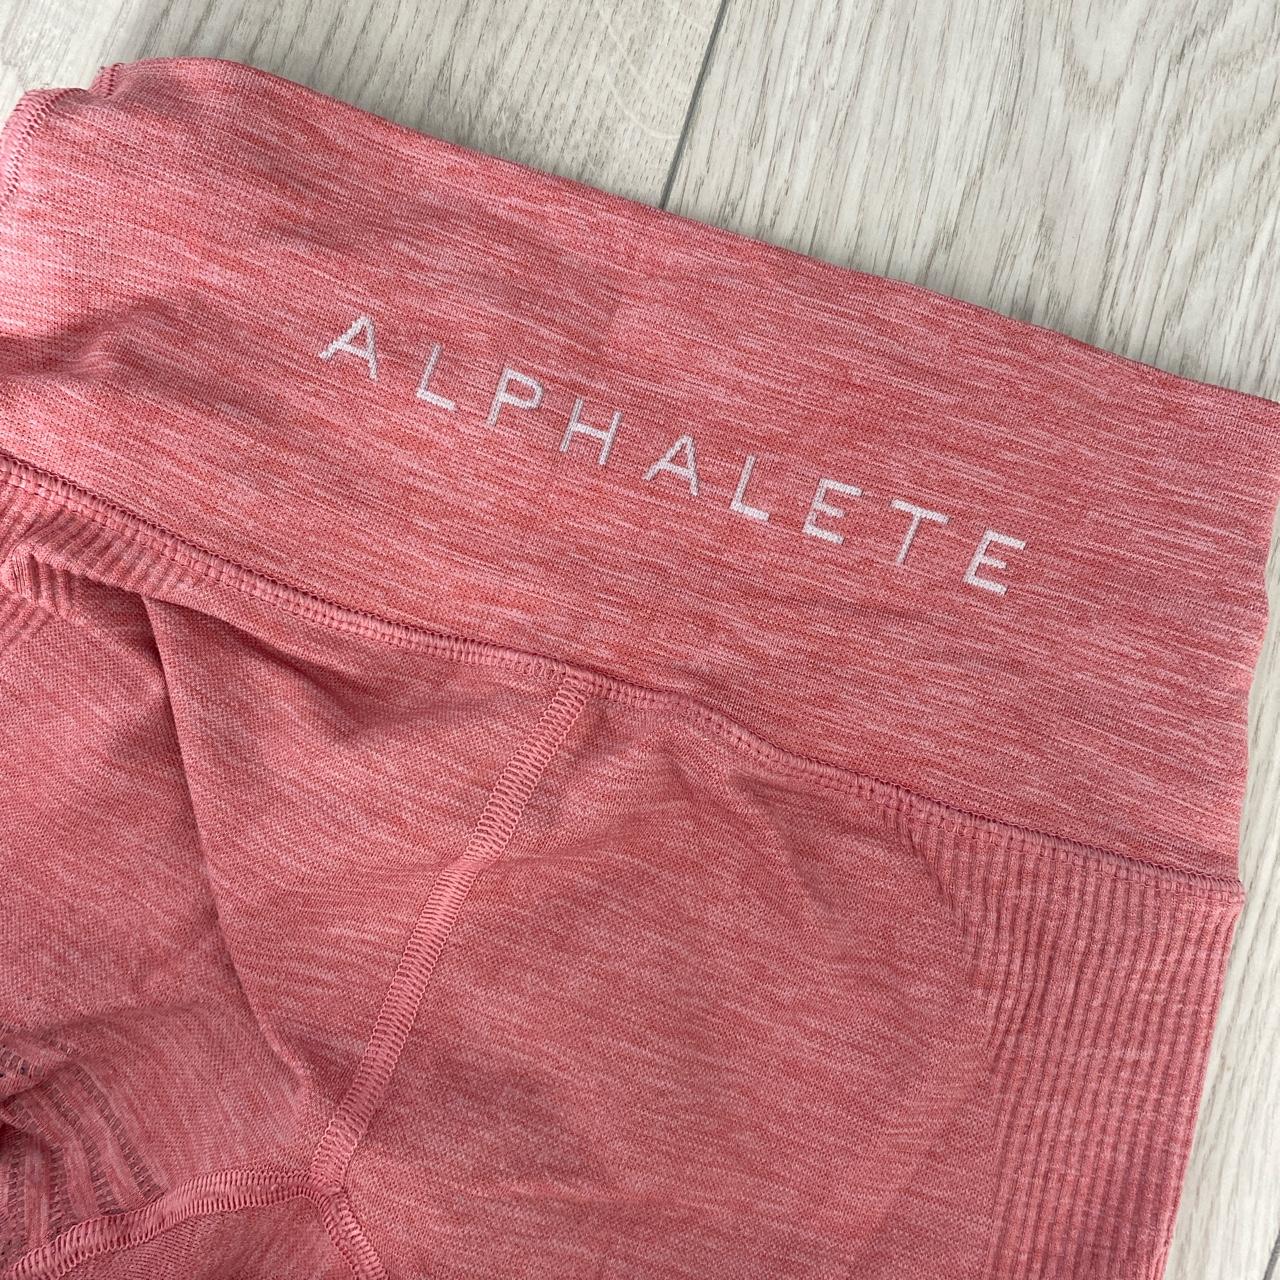 alphalete halo leggings in rose pink little hole at - Depop